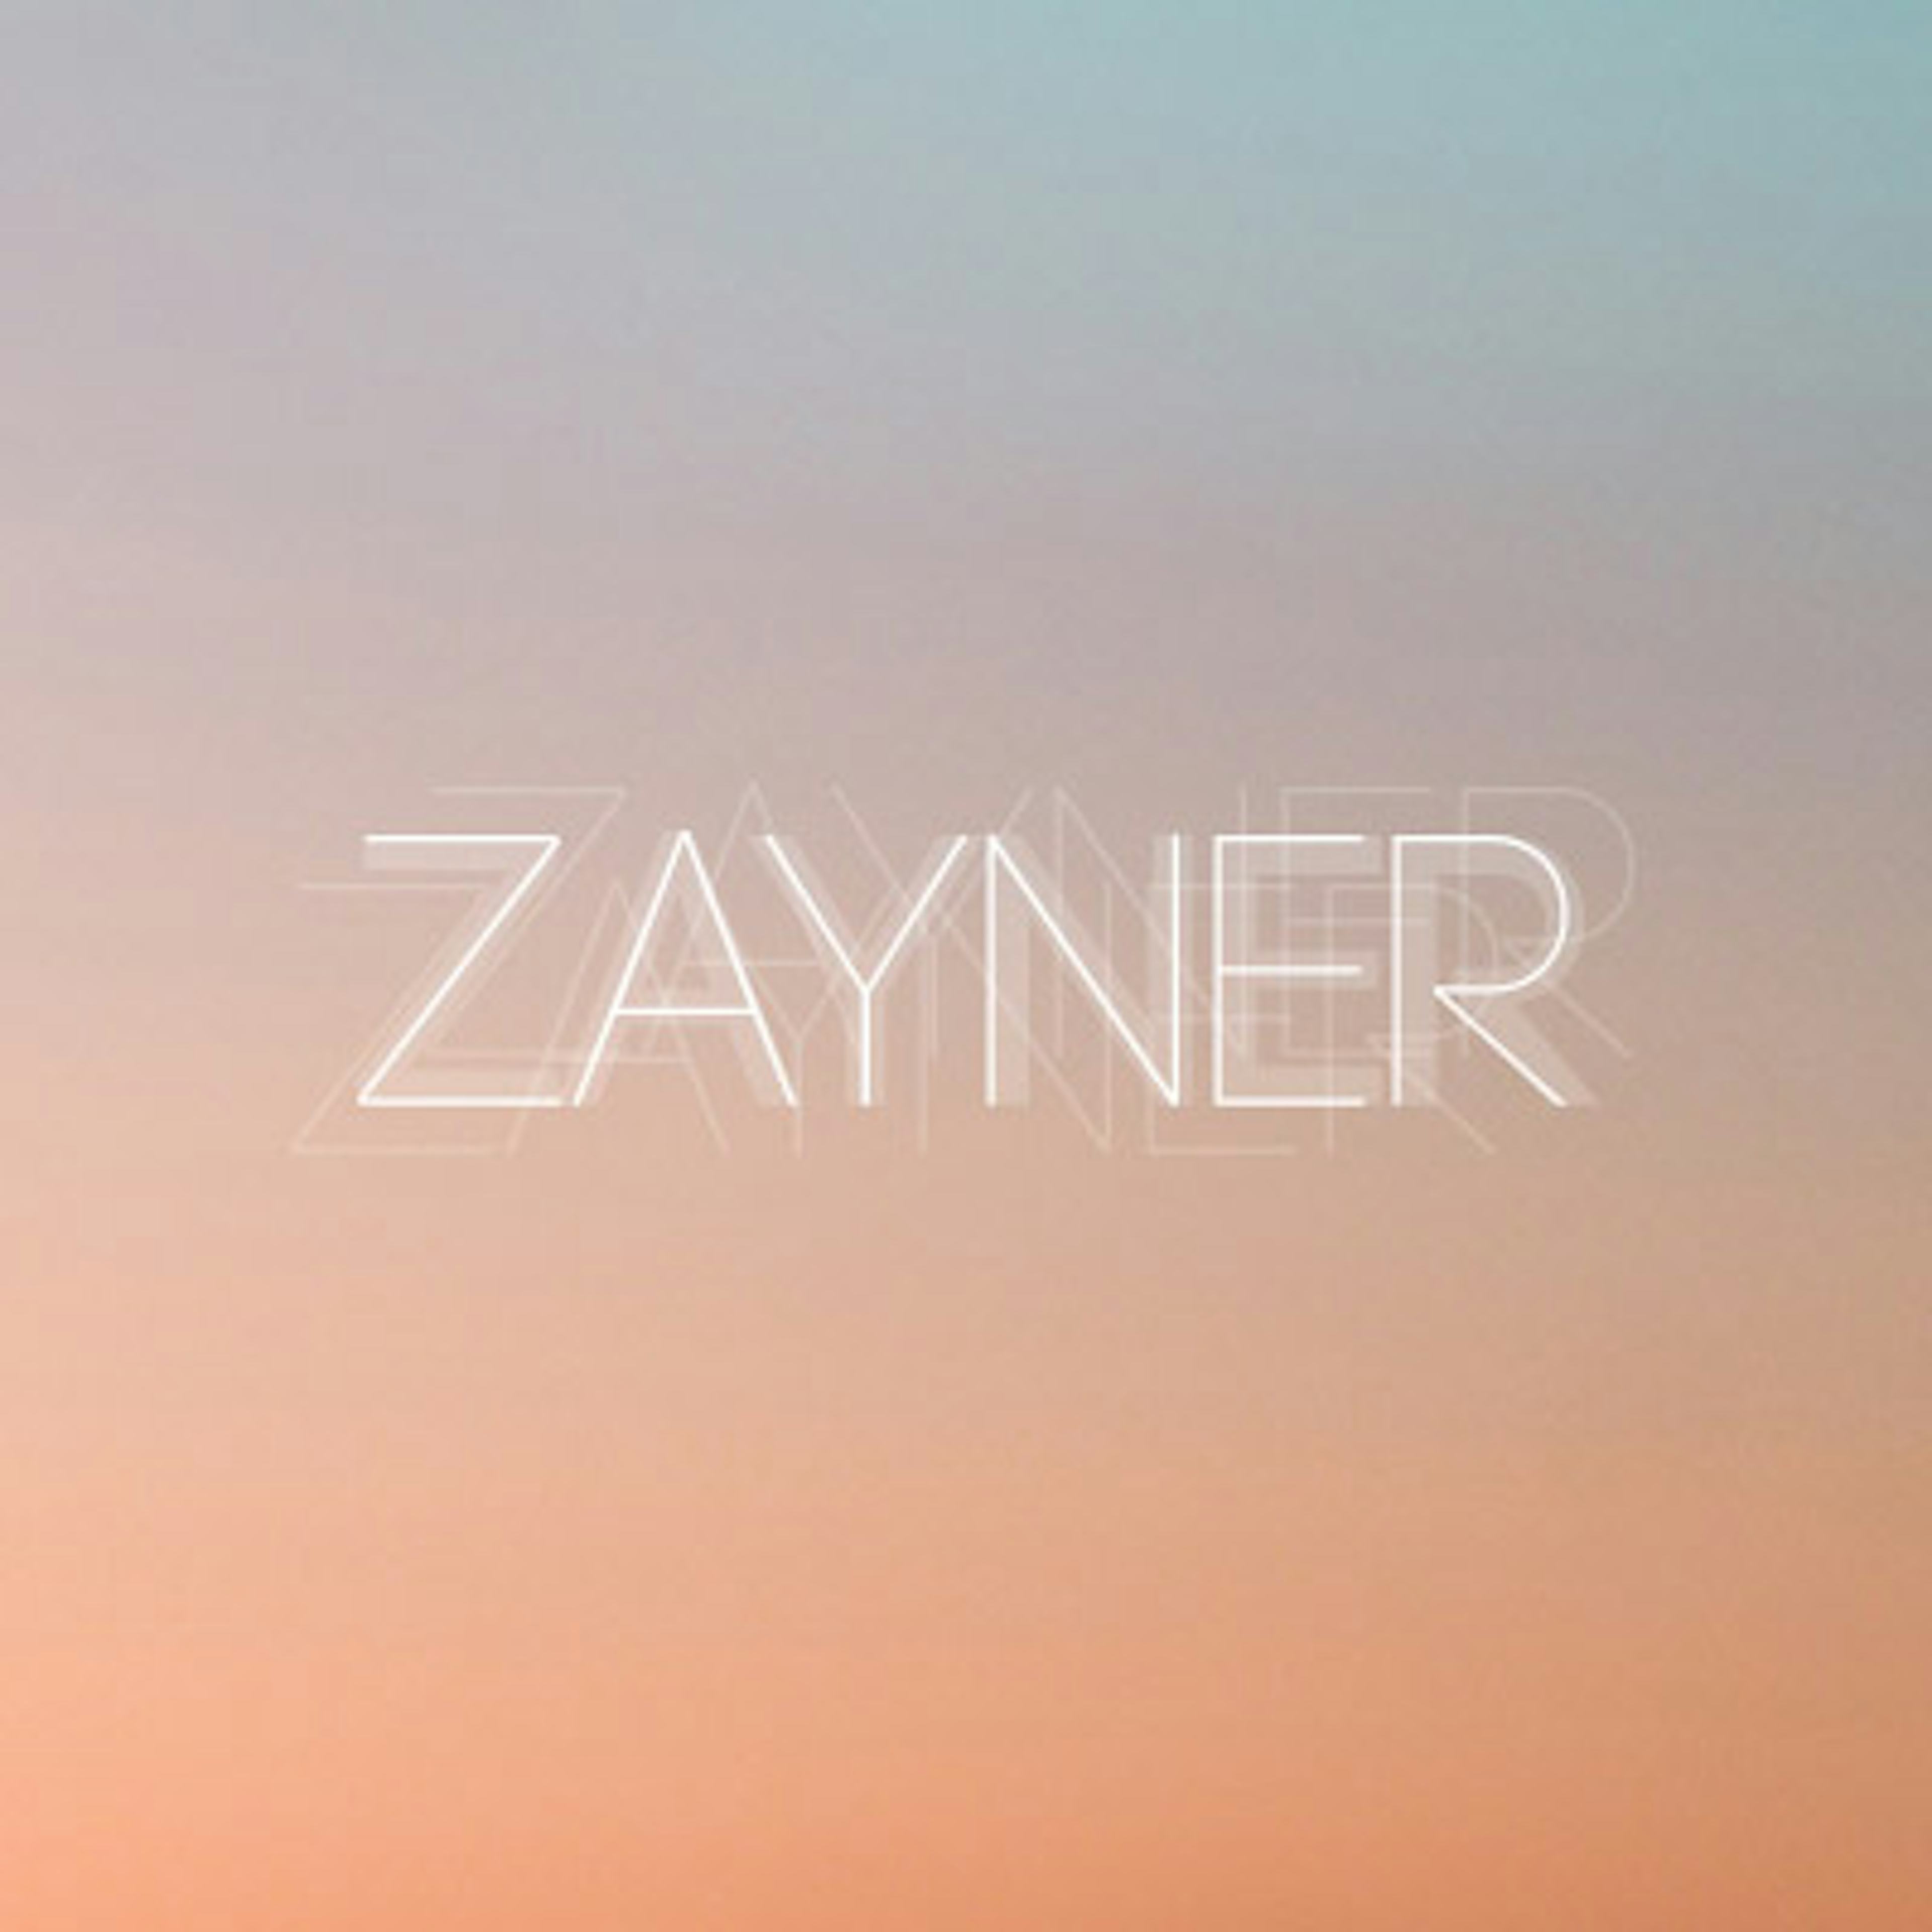 Zayner artwork